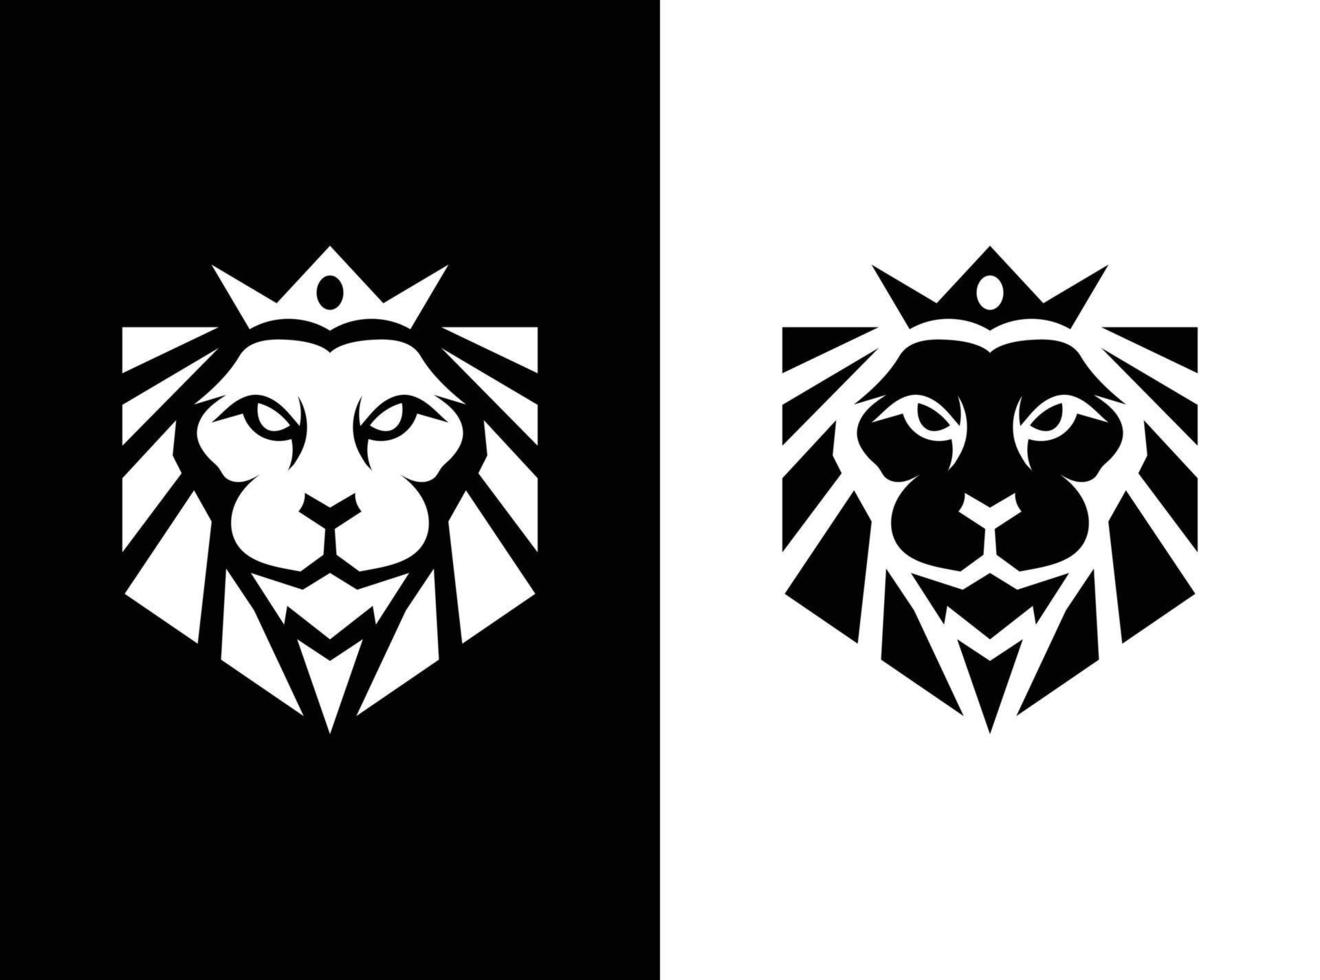 real rei leão coroa símbolos. leão animal logotipo. Prêmio luxo marca identidade ícone. vetor ilustração.